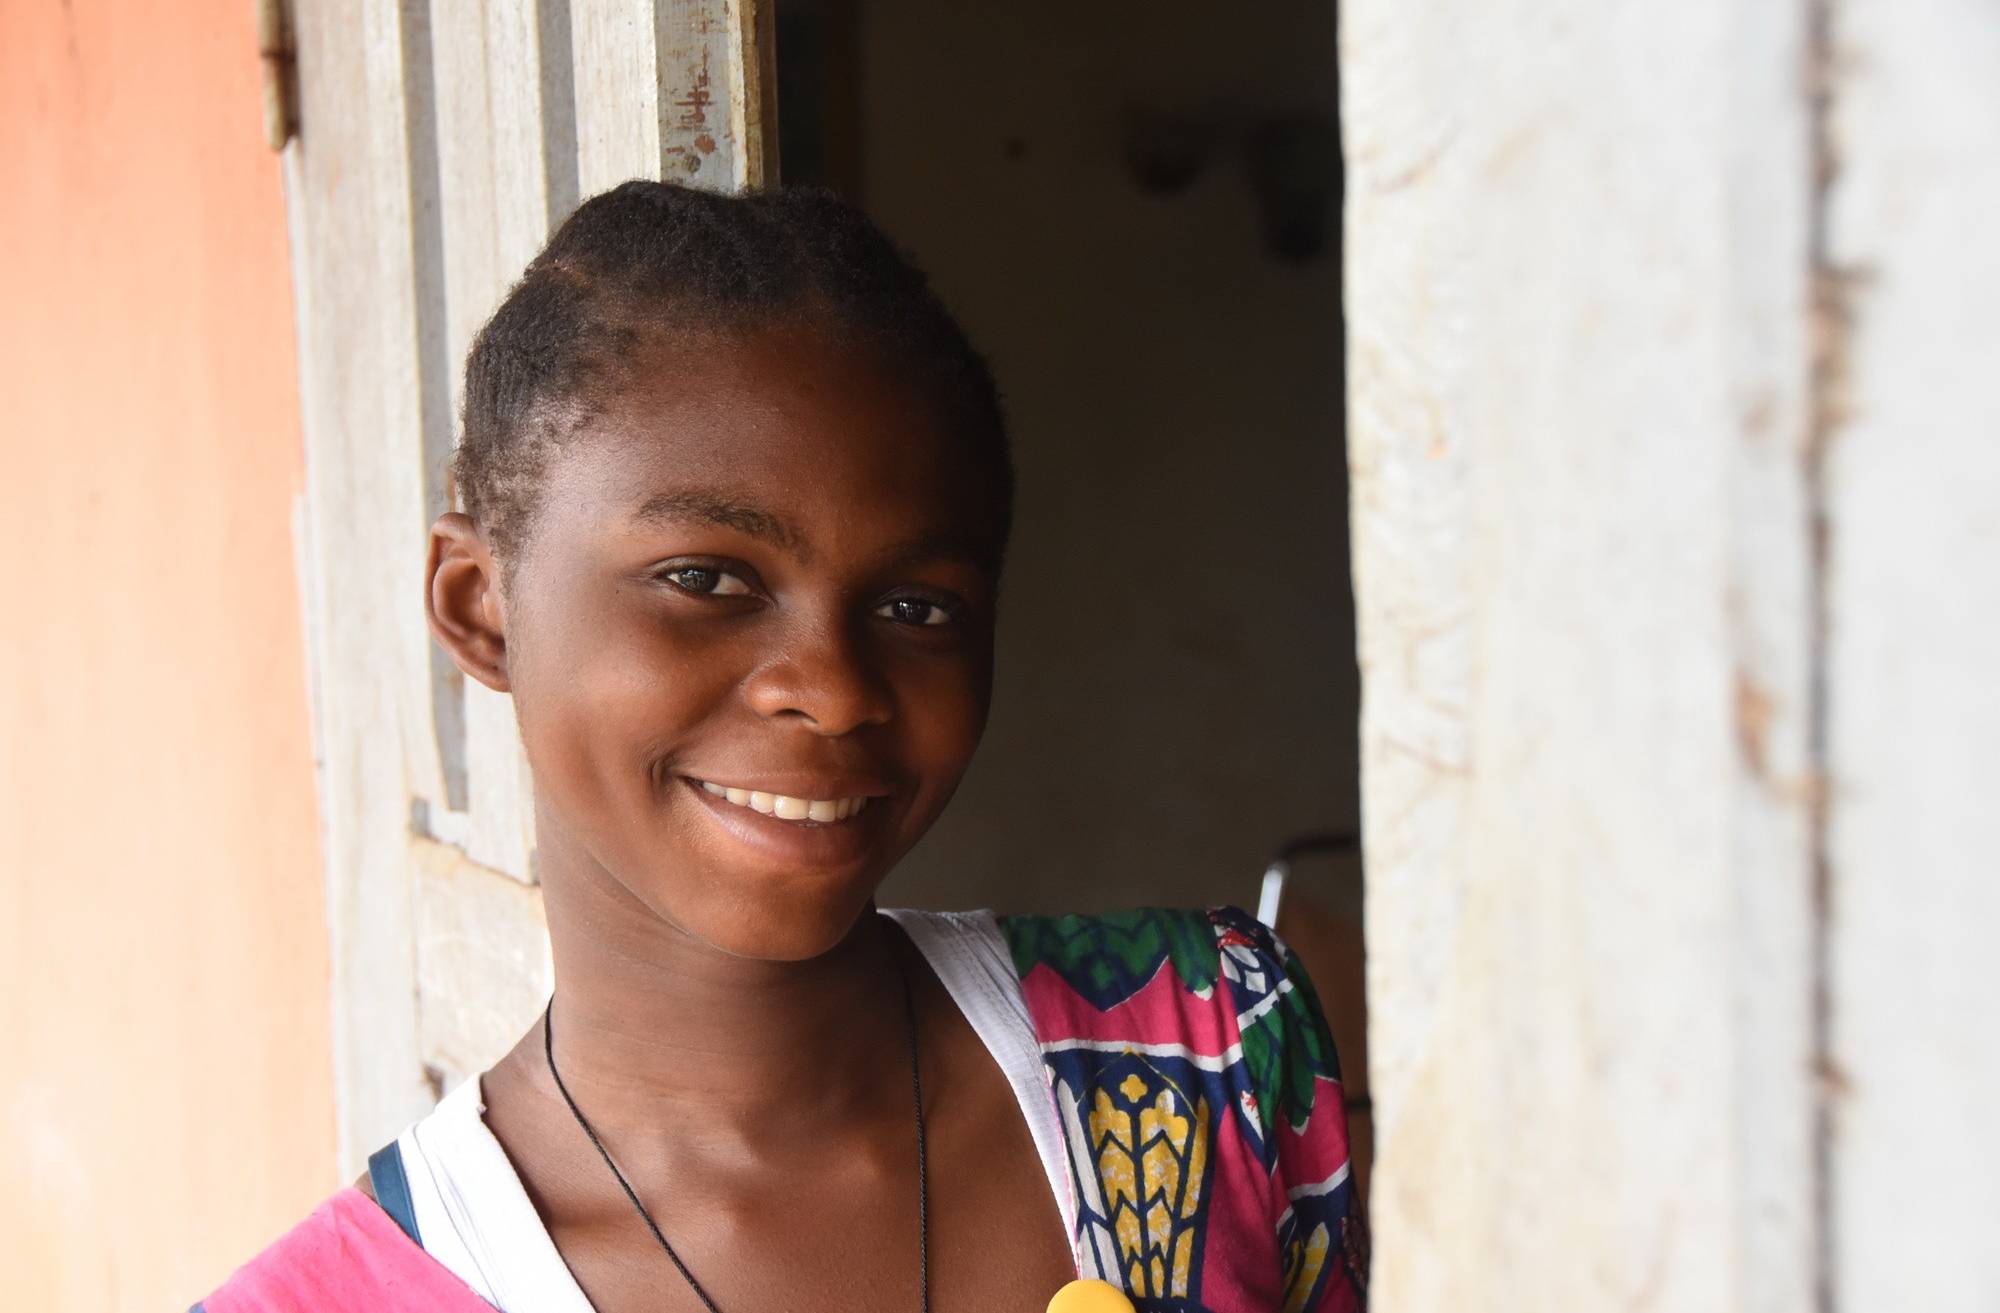  Christine (17) aus Kamerun wurde erfolgreich am Grauen Star operiert und kann wieder klar sehen. 